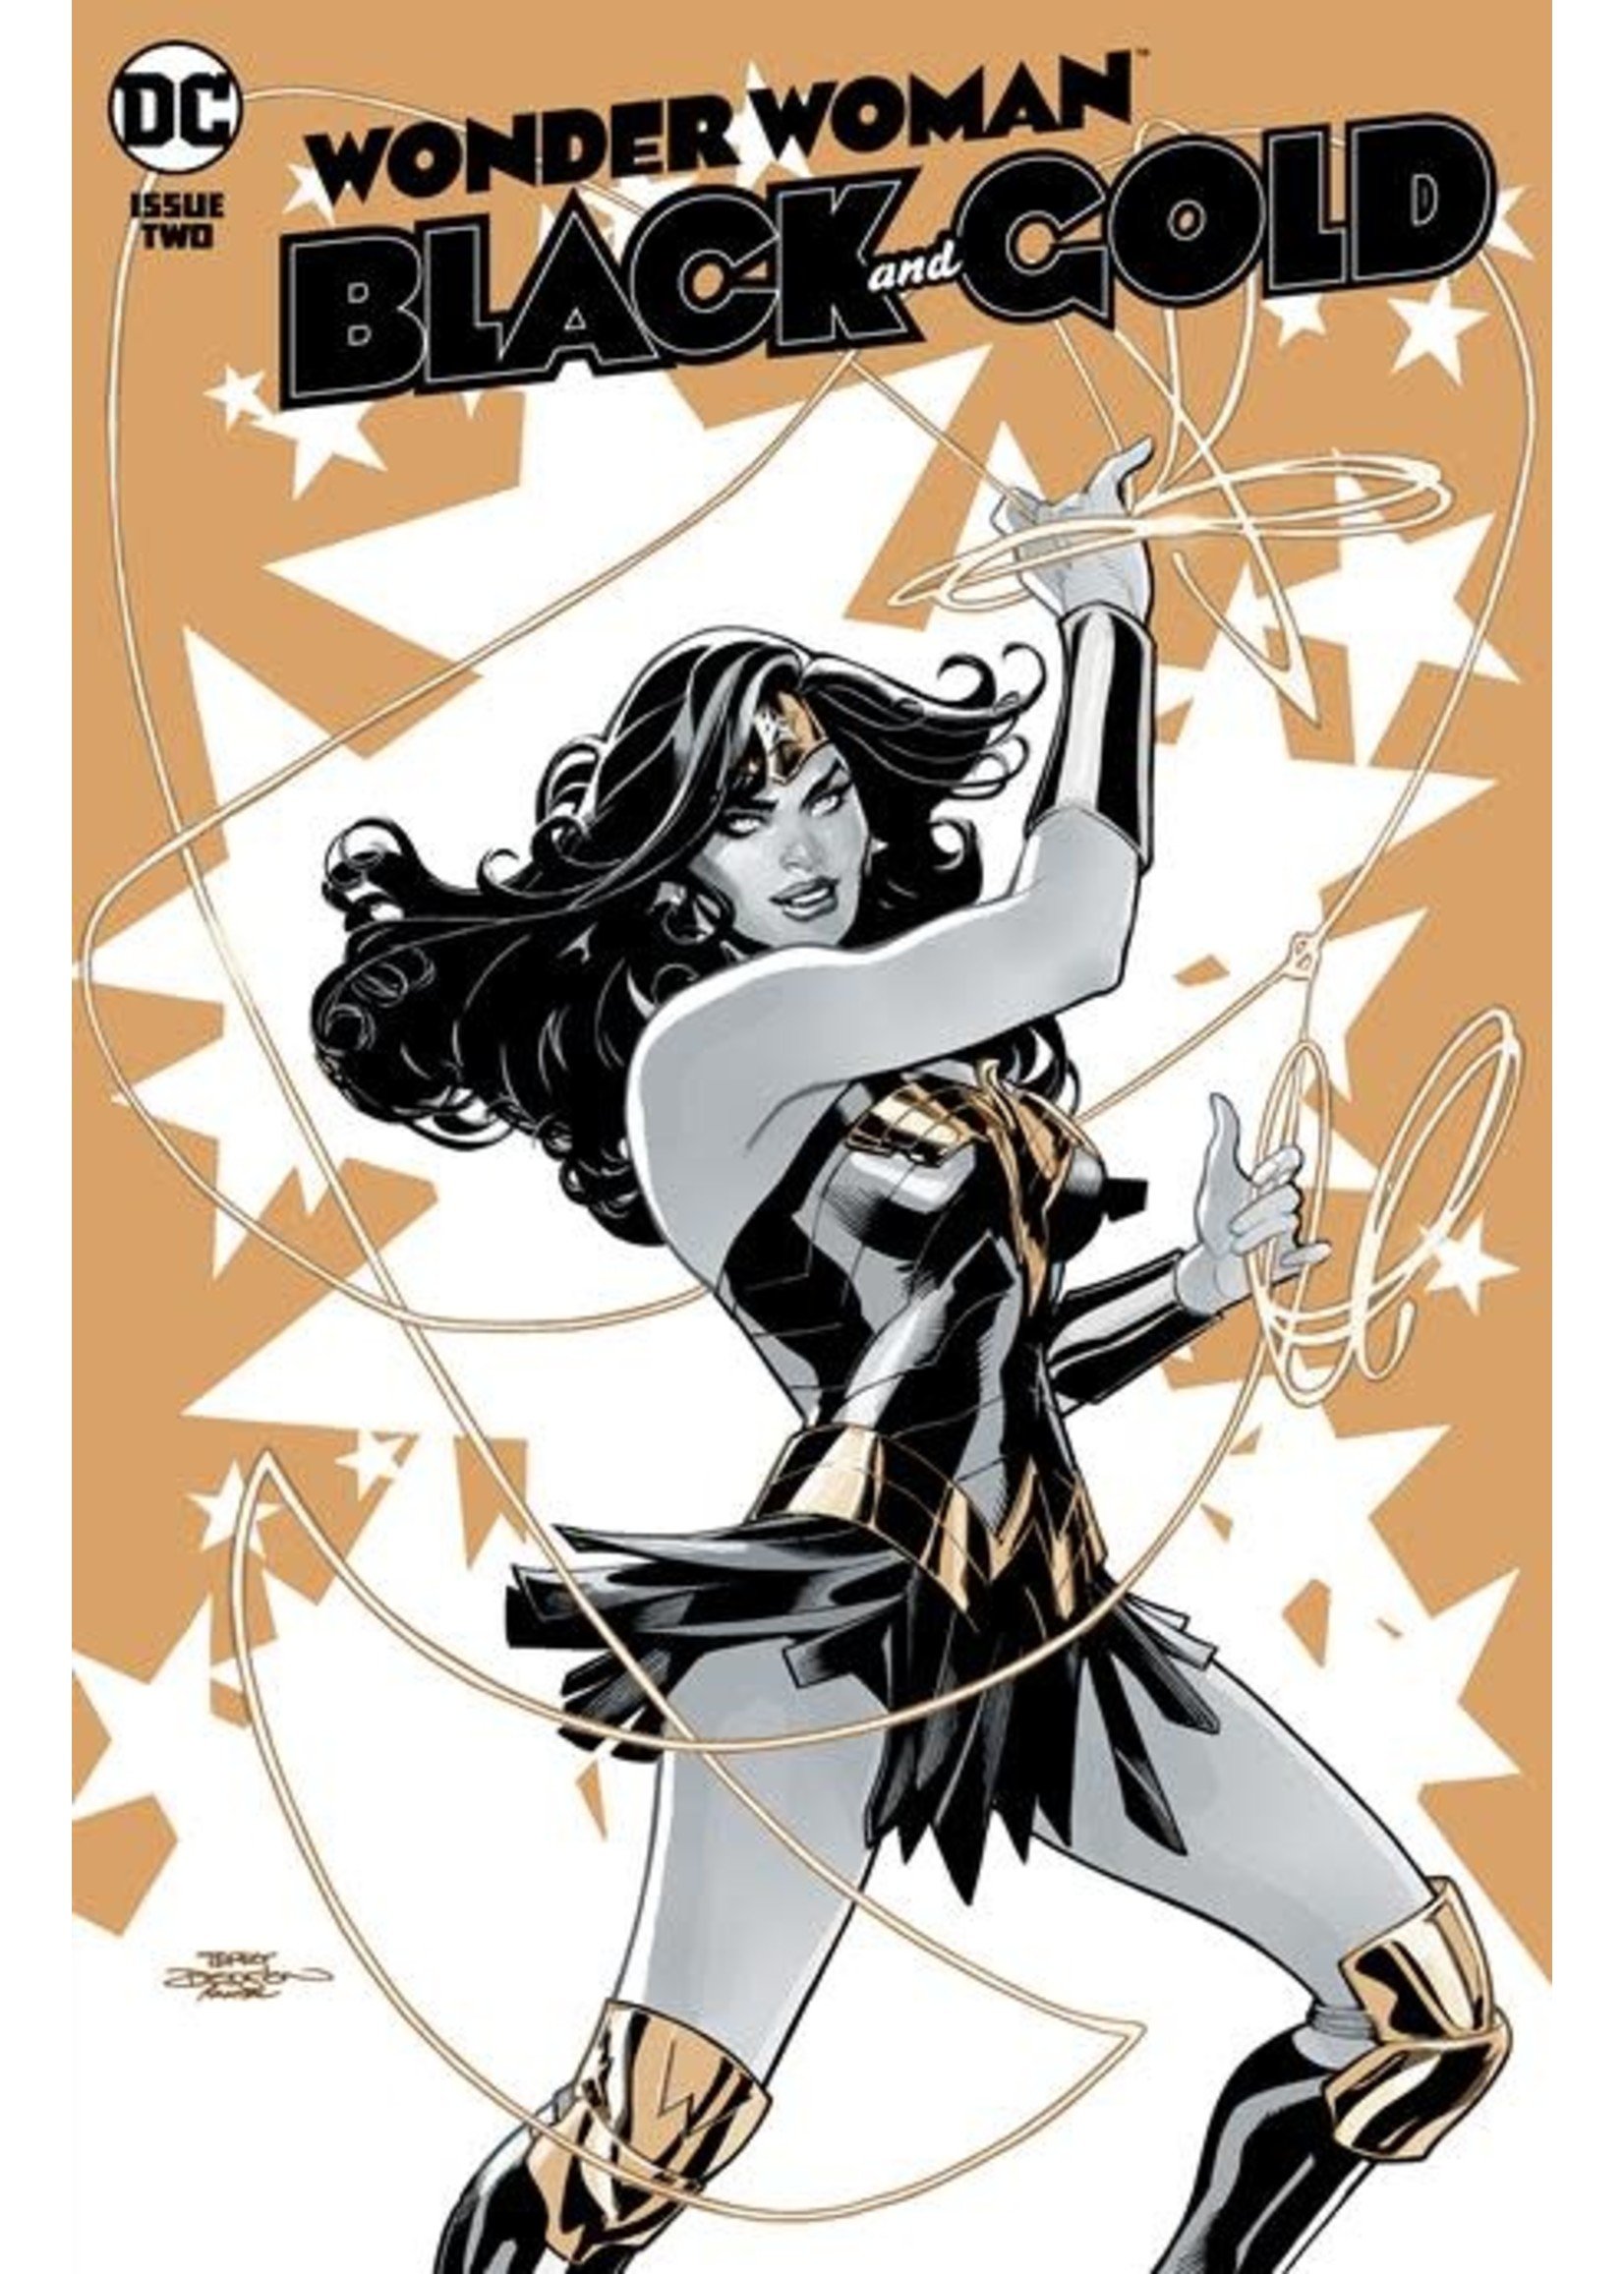 DC COMICS WONDER WOMAN BLACK & GOLD #2 (OF 6) CVR A TERRY DO